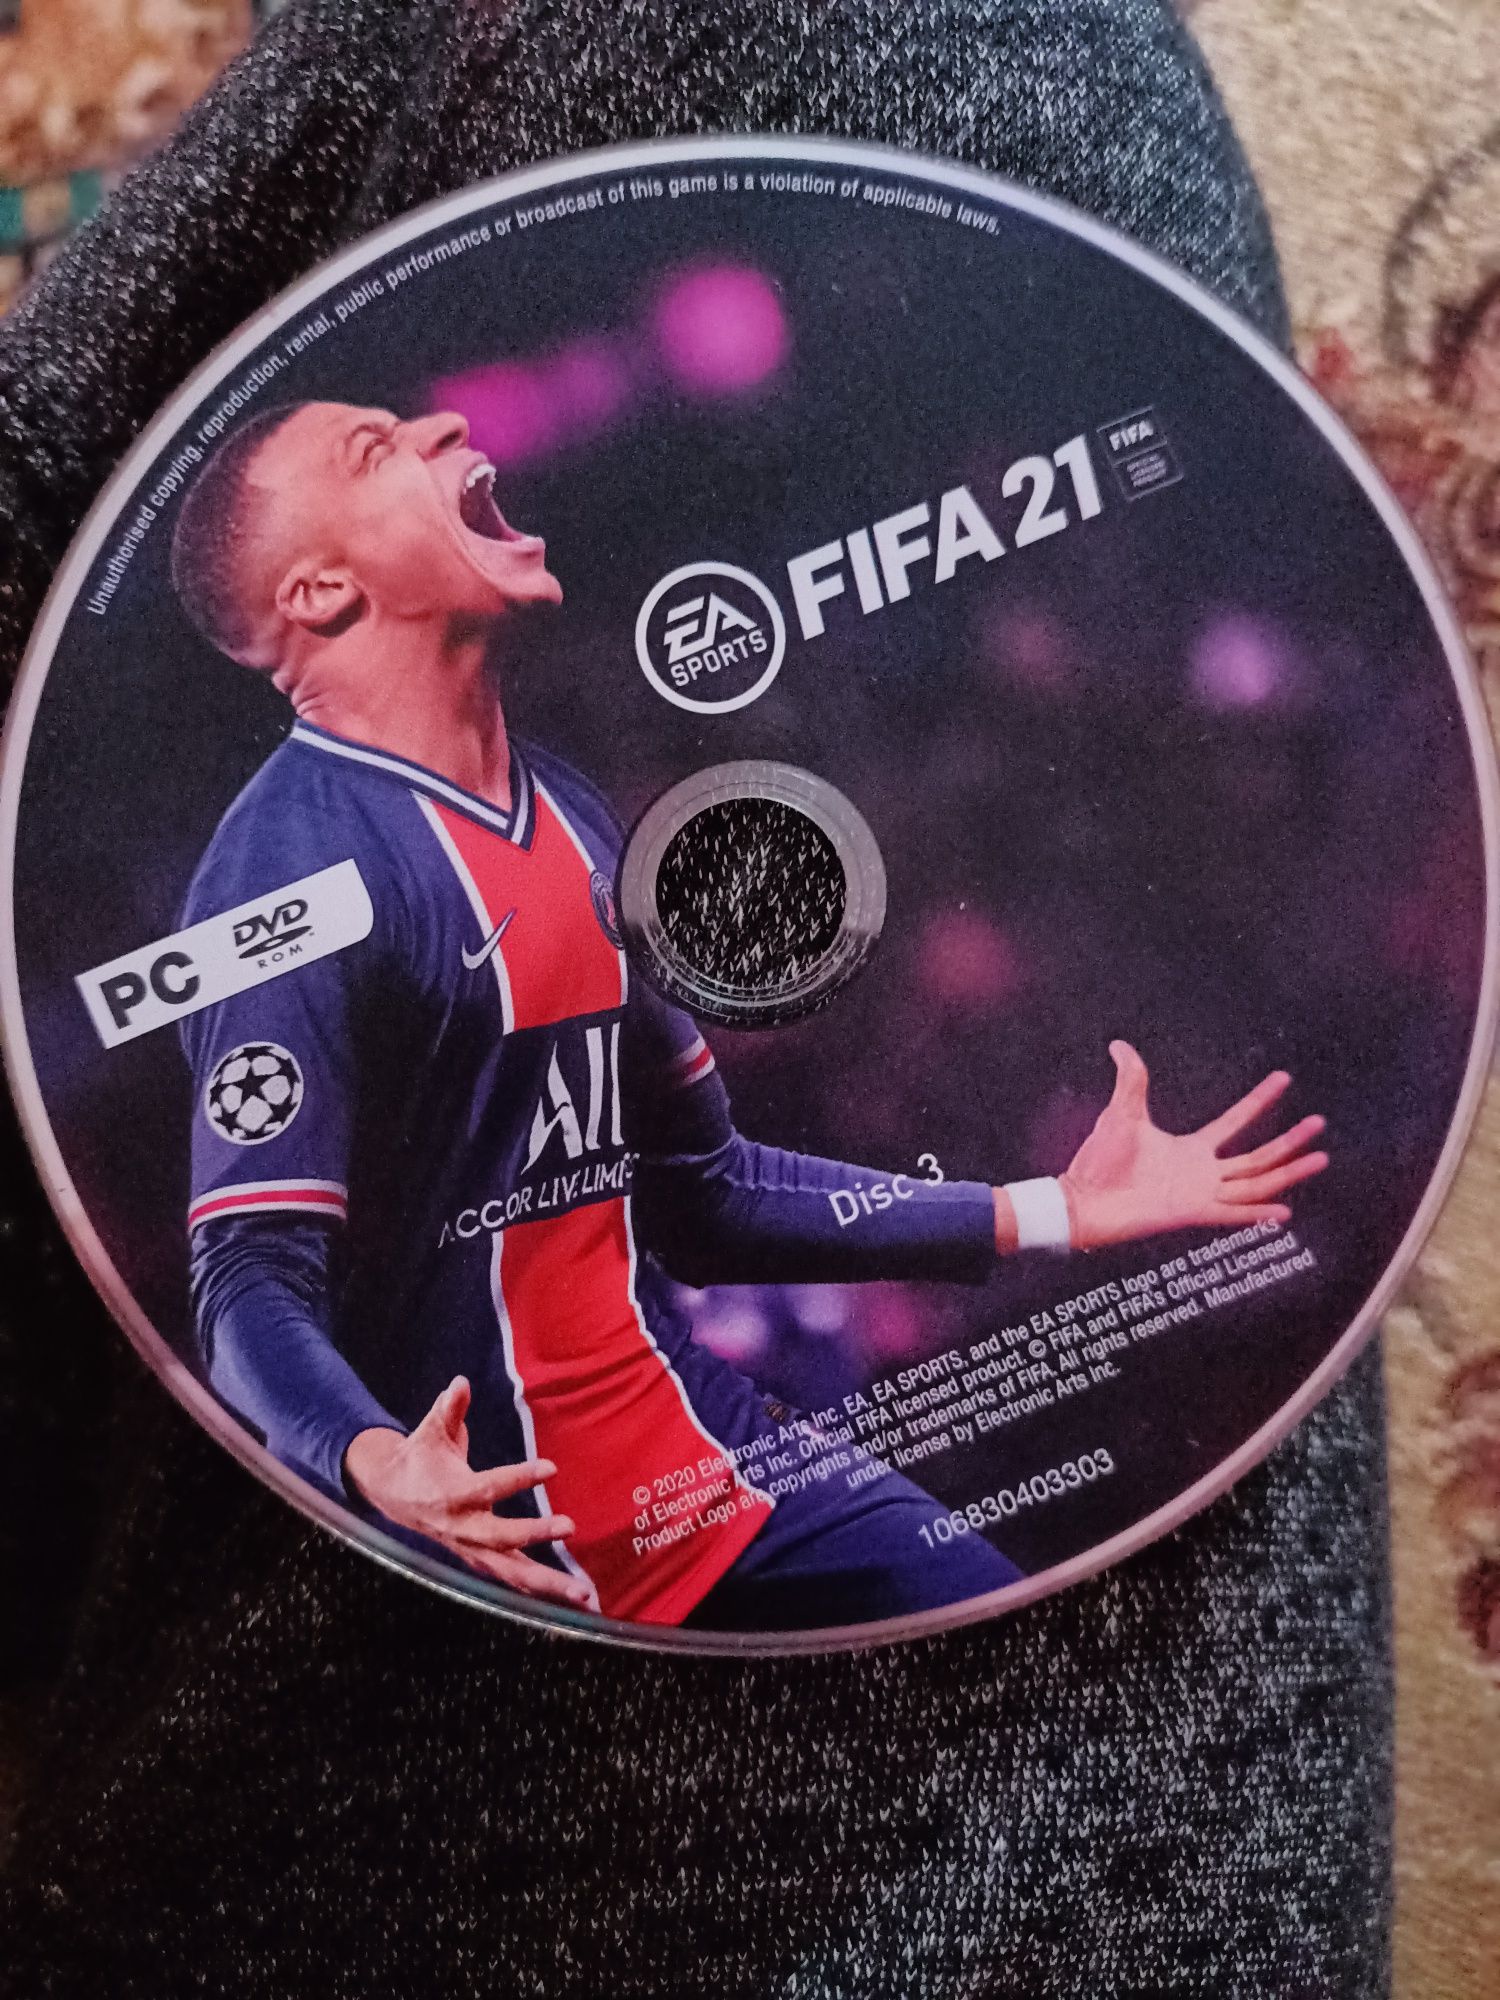 FIFA 21 pentru PC